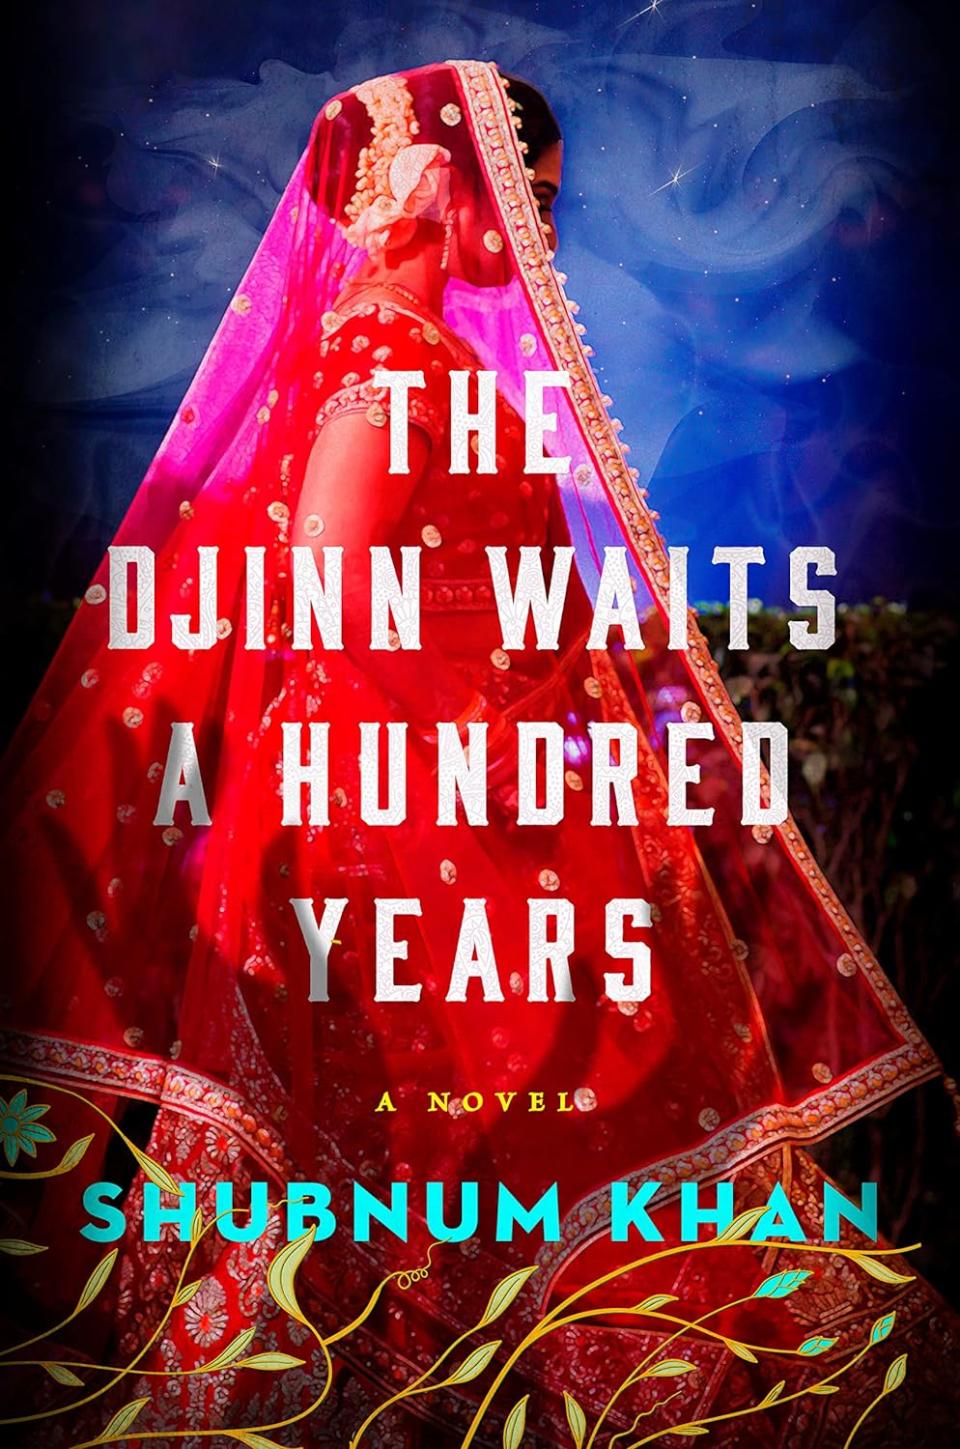 ‘The Djinn Waits a Hundred Years’ by Shubnum Khan